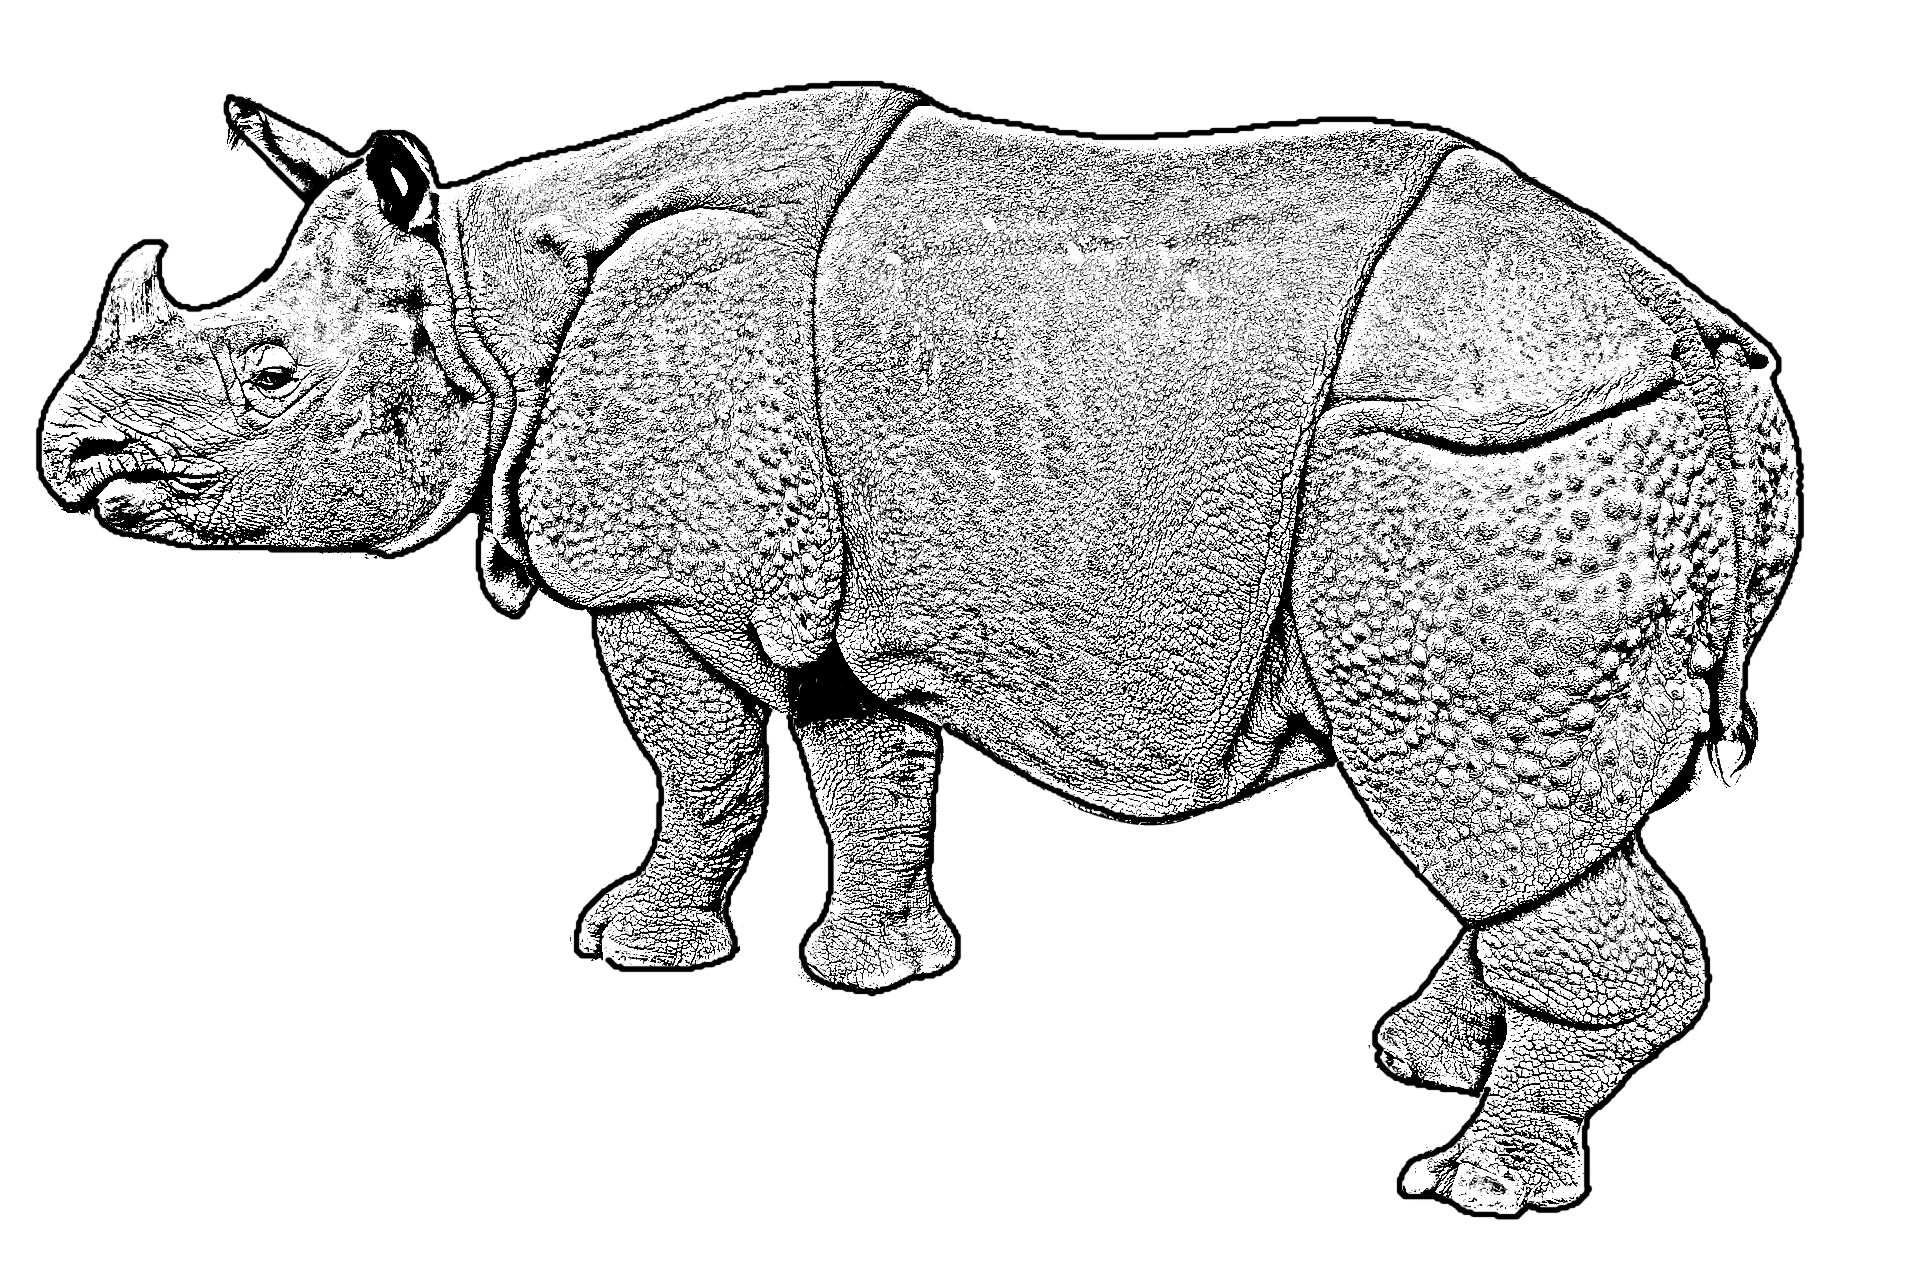 Disegno da colorare di un rinoceronte